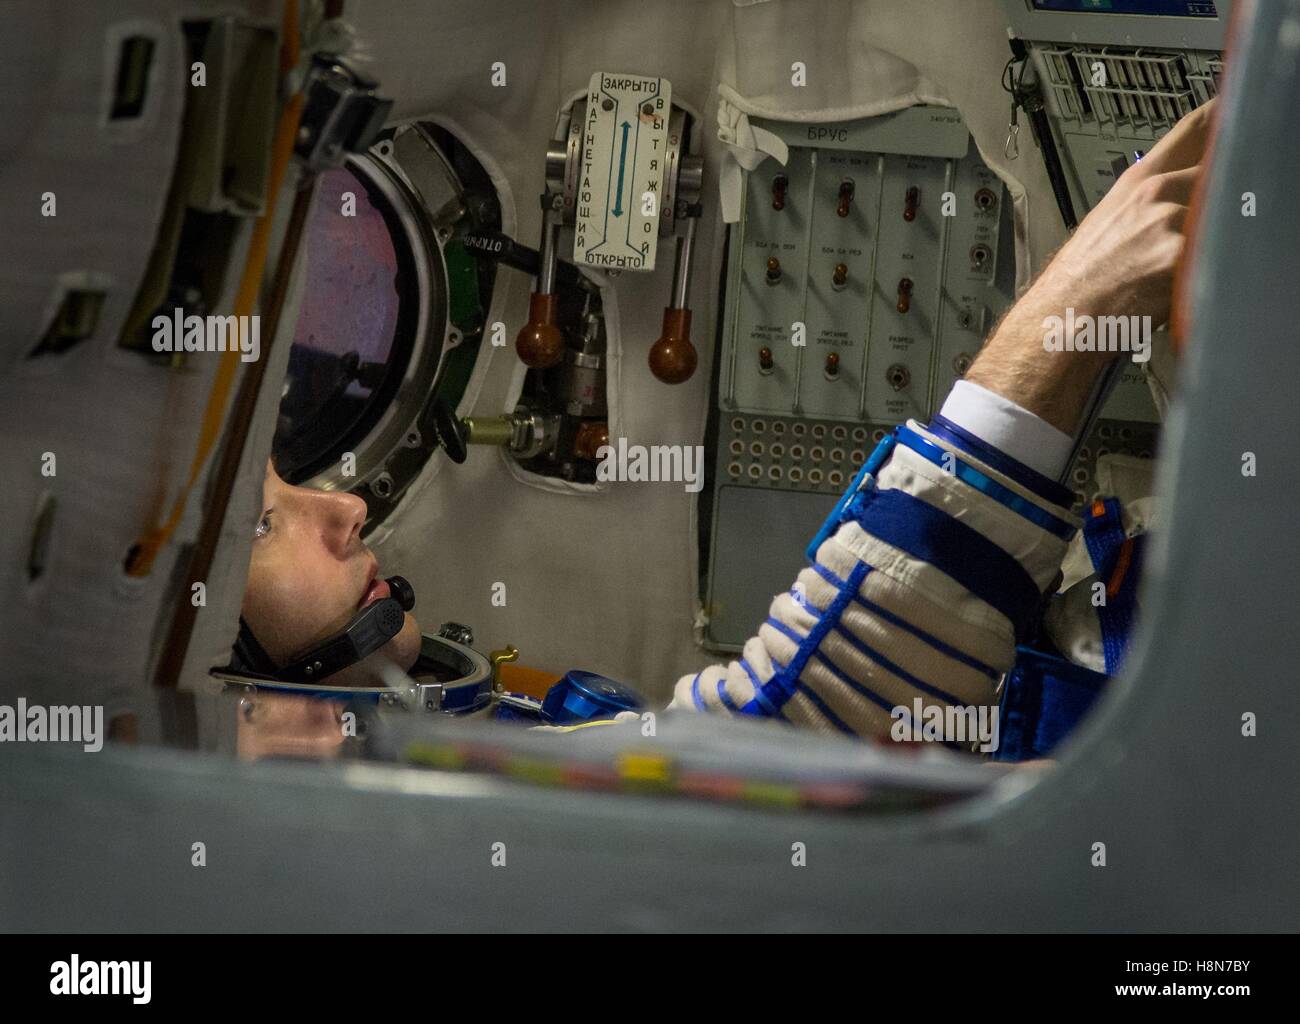 NASA internationale Raumstation Expedition 50 MS Sojus-03 prime Crew Mitglied französischer Astronaut arbeitet Thomas Pesquet von der European Space Agency innerhalb der Sojus-Simulator während der Abschlussqualifikation Prüfungen auf der Gagarin-Kosmonautentrainingszentrum 25. Oktober 2016 in Star City, Russland. Stockfoto